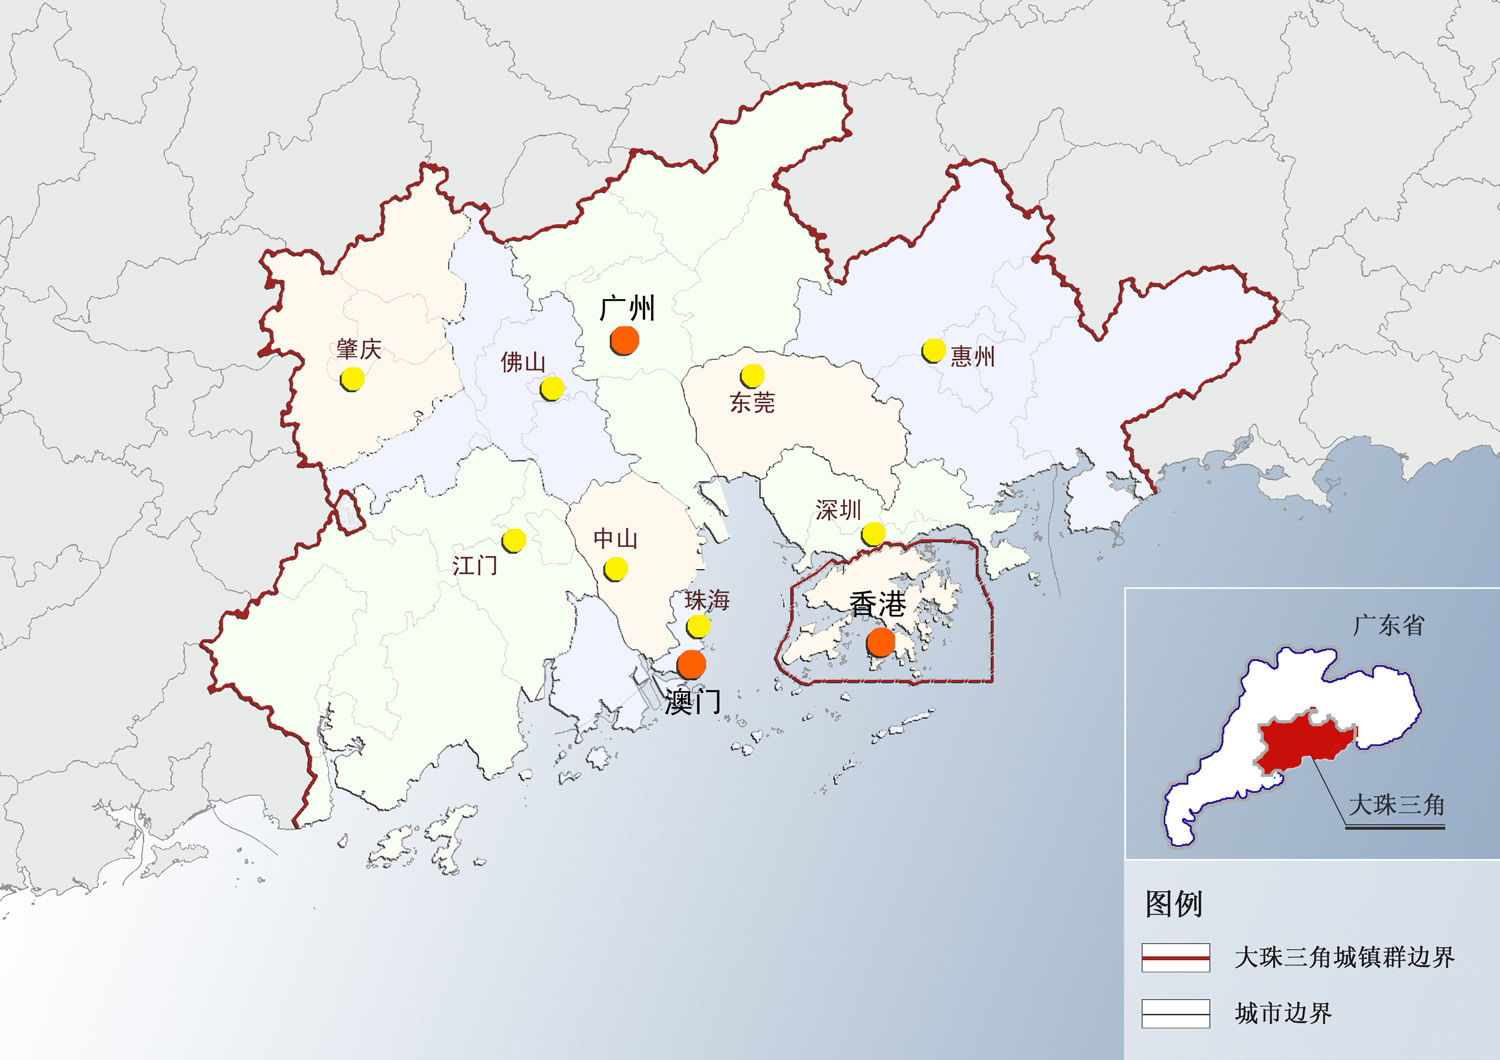 大珠江三角洲城镇群协调发展规划研究